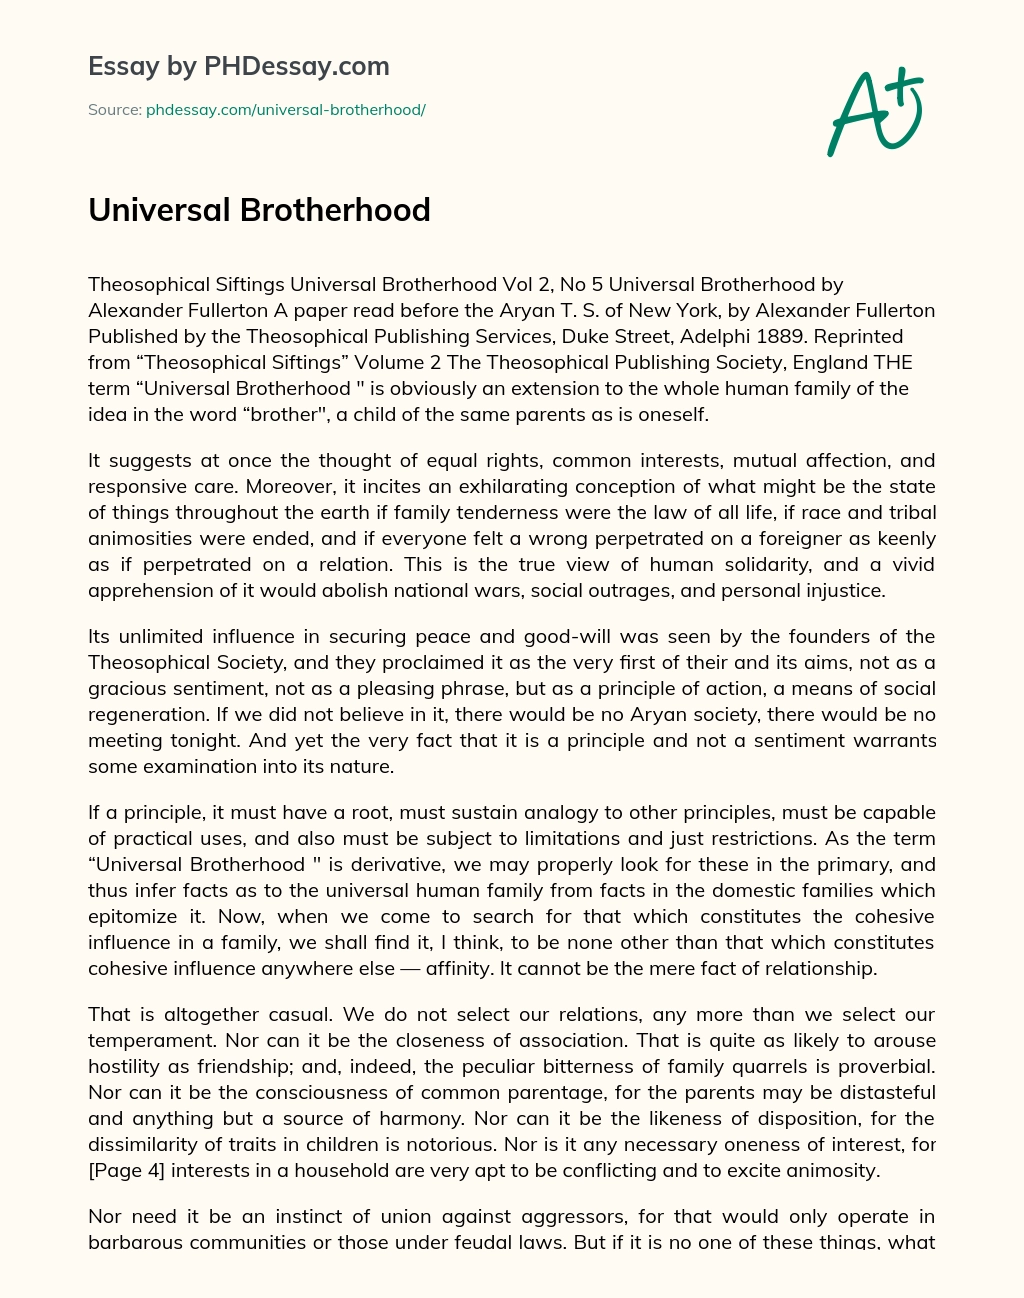 essay on universal brotherhood and peace